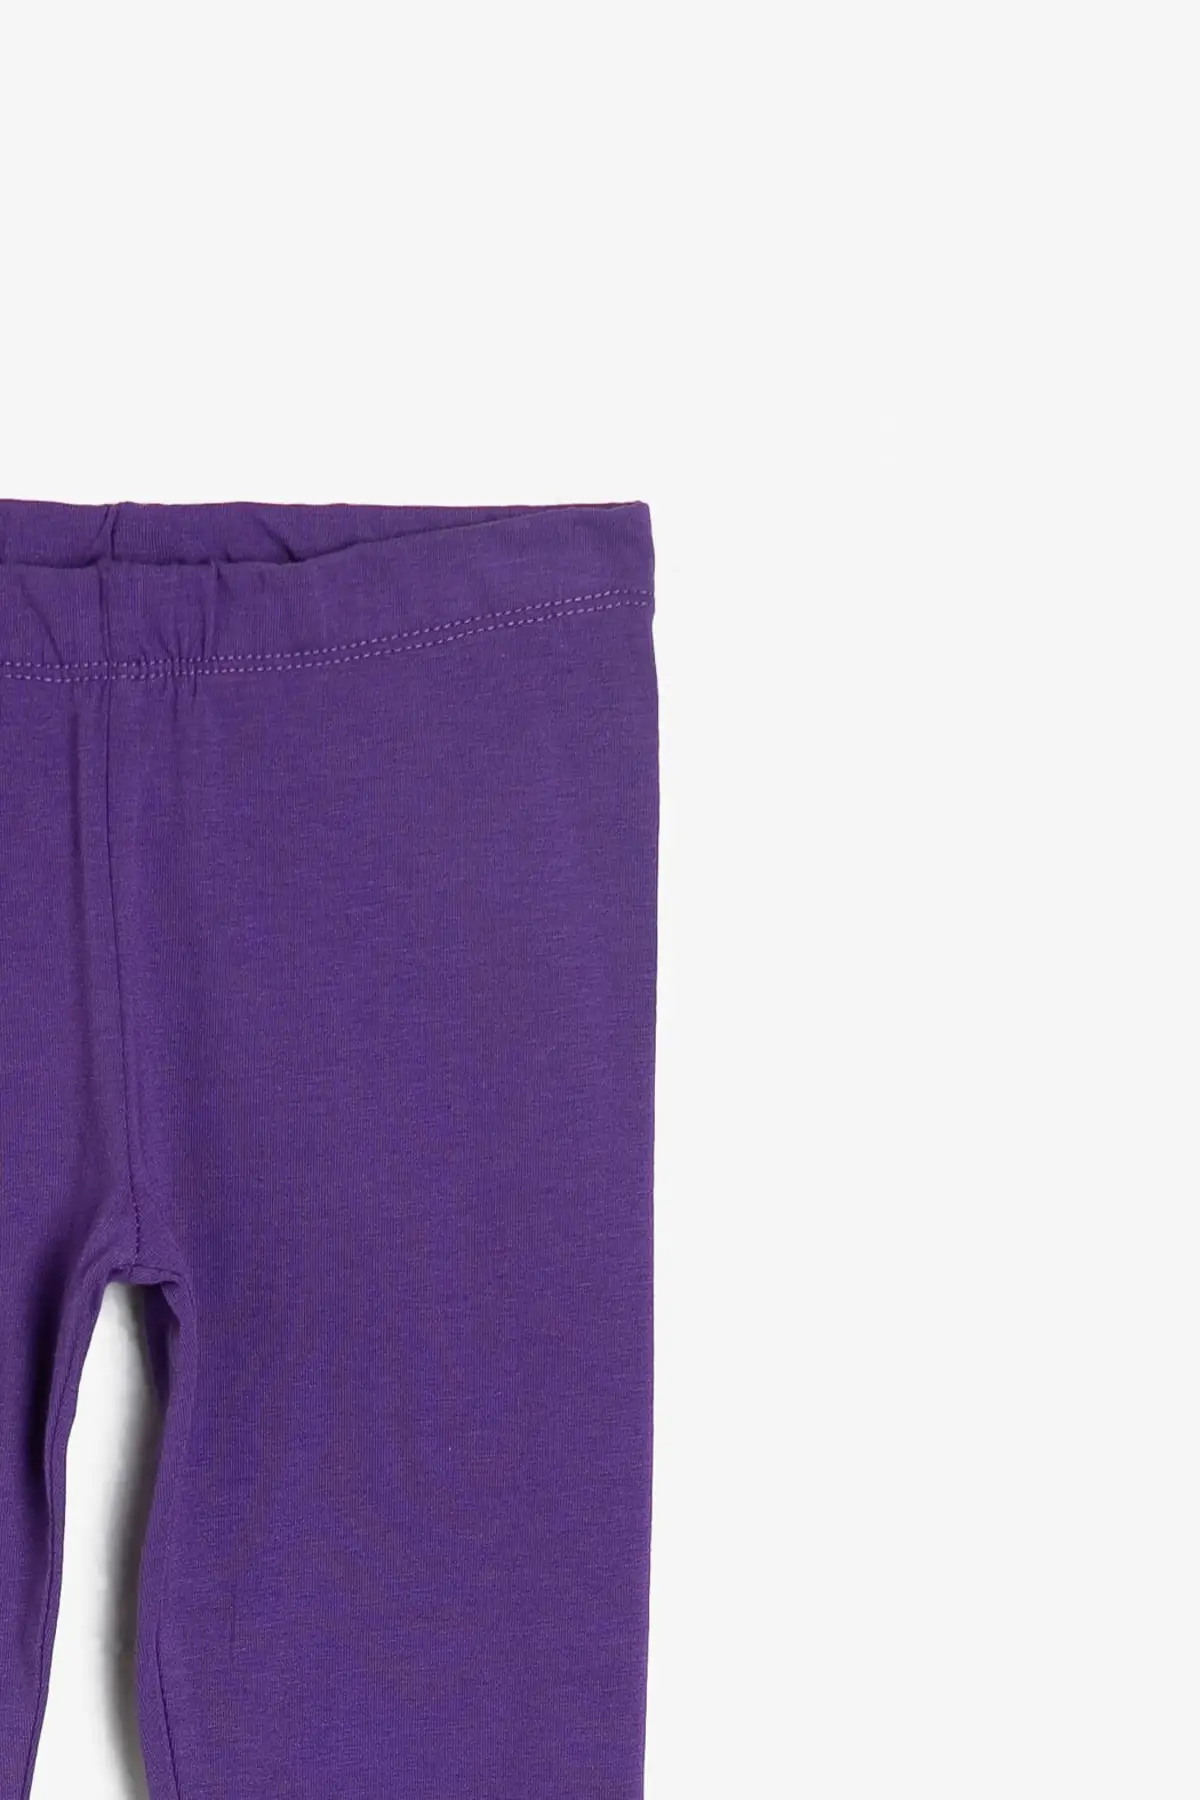 Coton/детские фиолетовые колготки для девочек